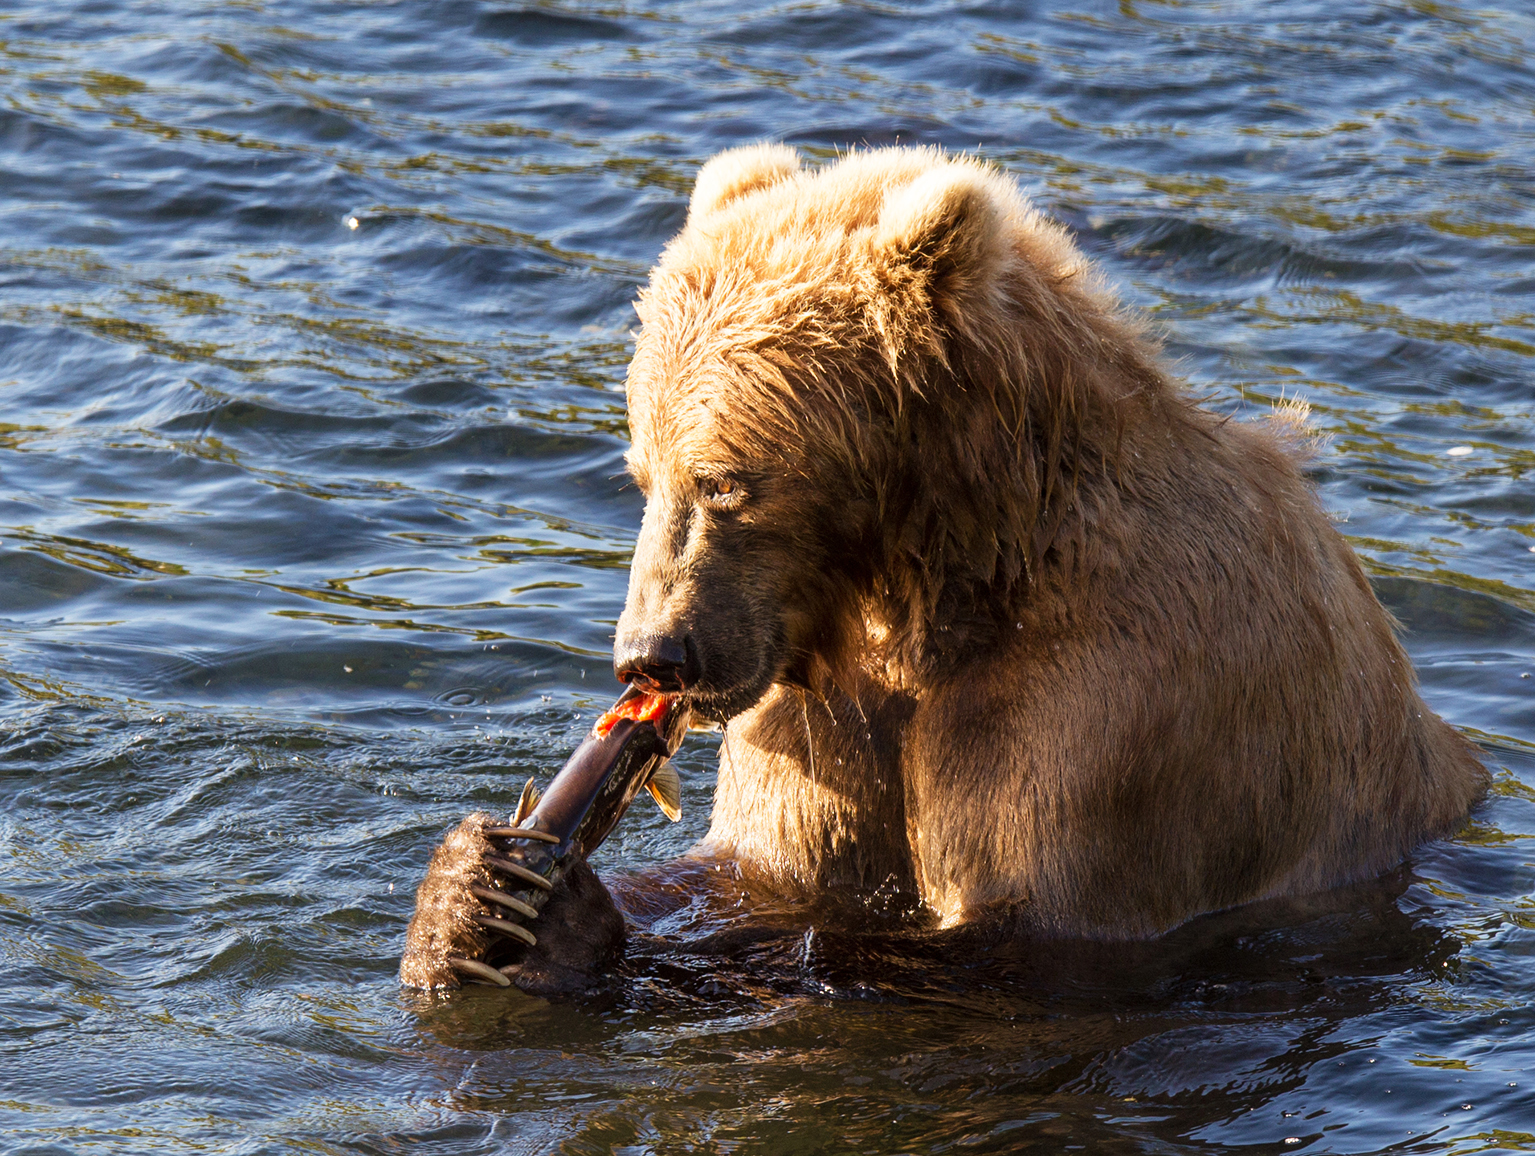 kodiak brown bear eating salmon